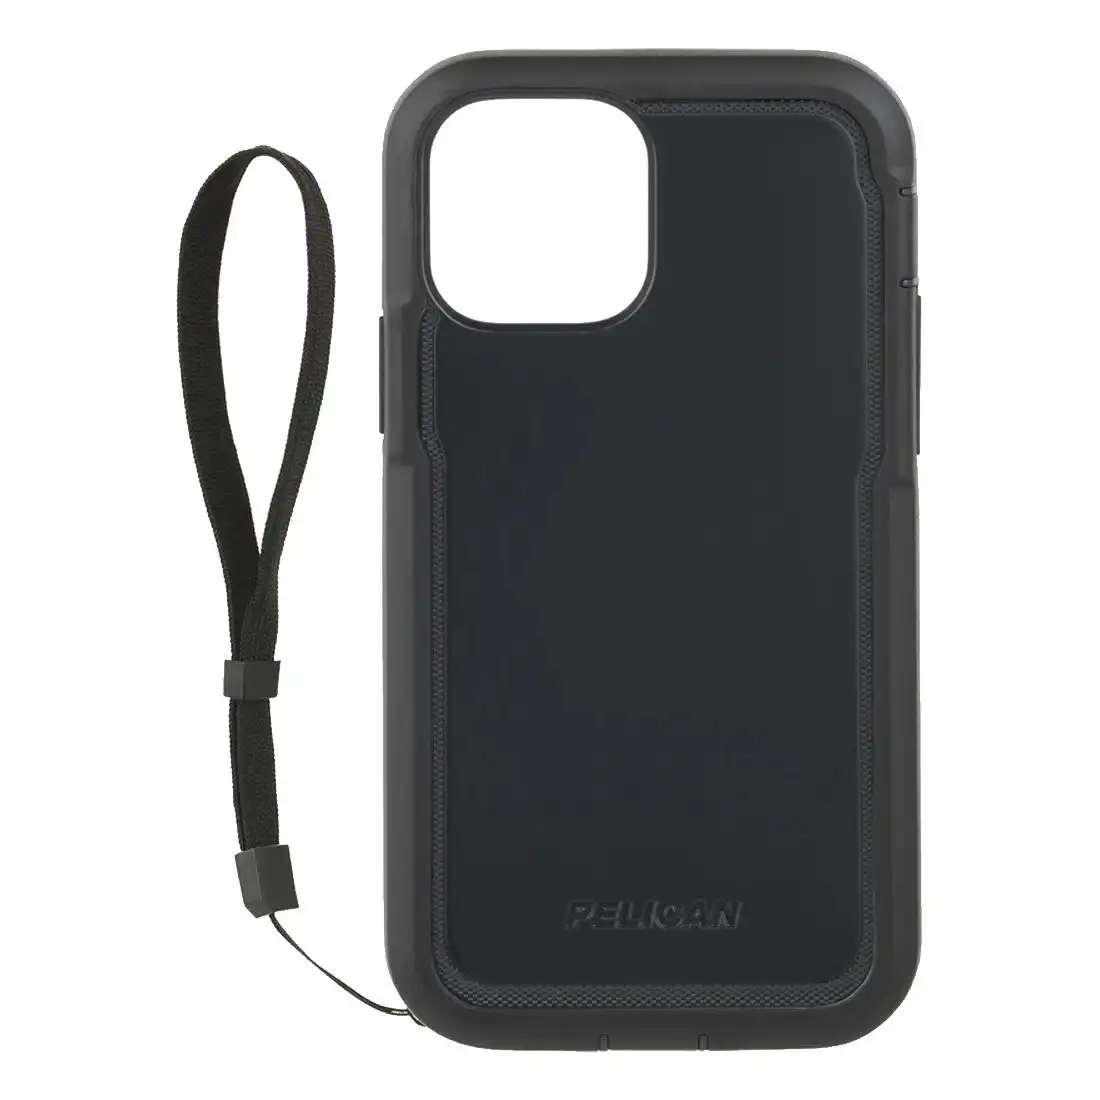 Pelican Marine Active Case for iPhone 12 mini - Black